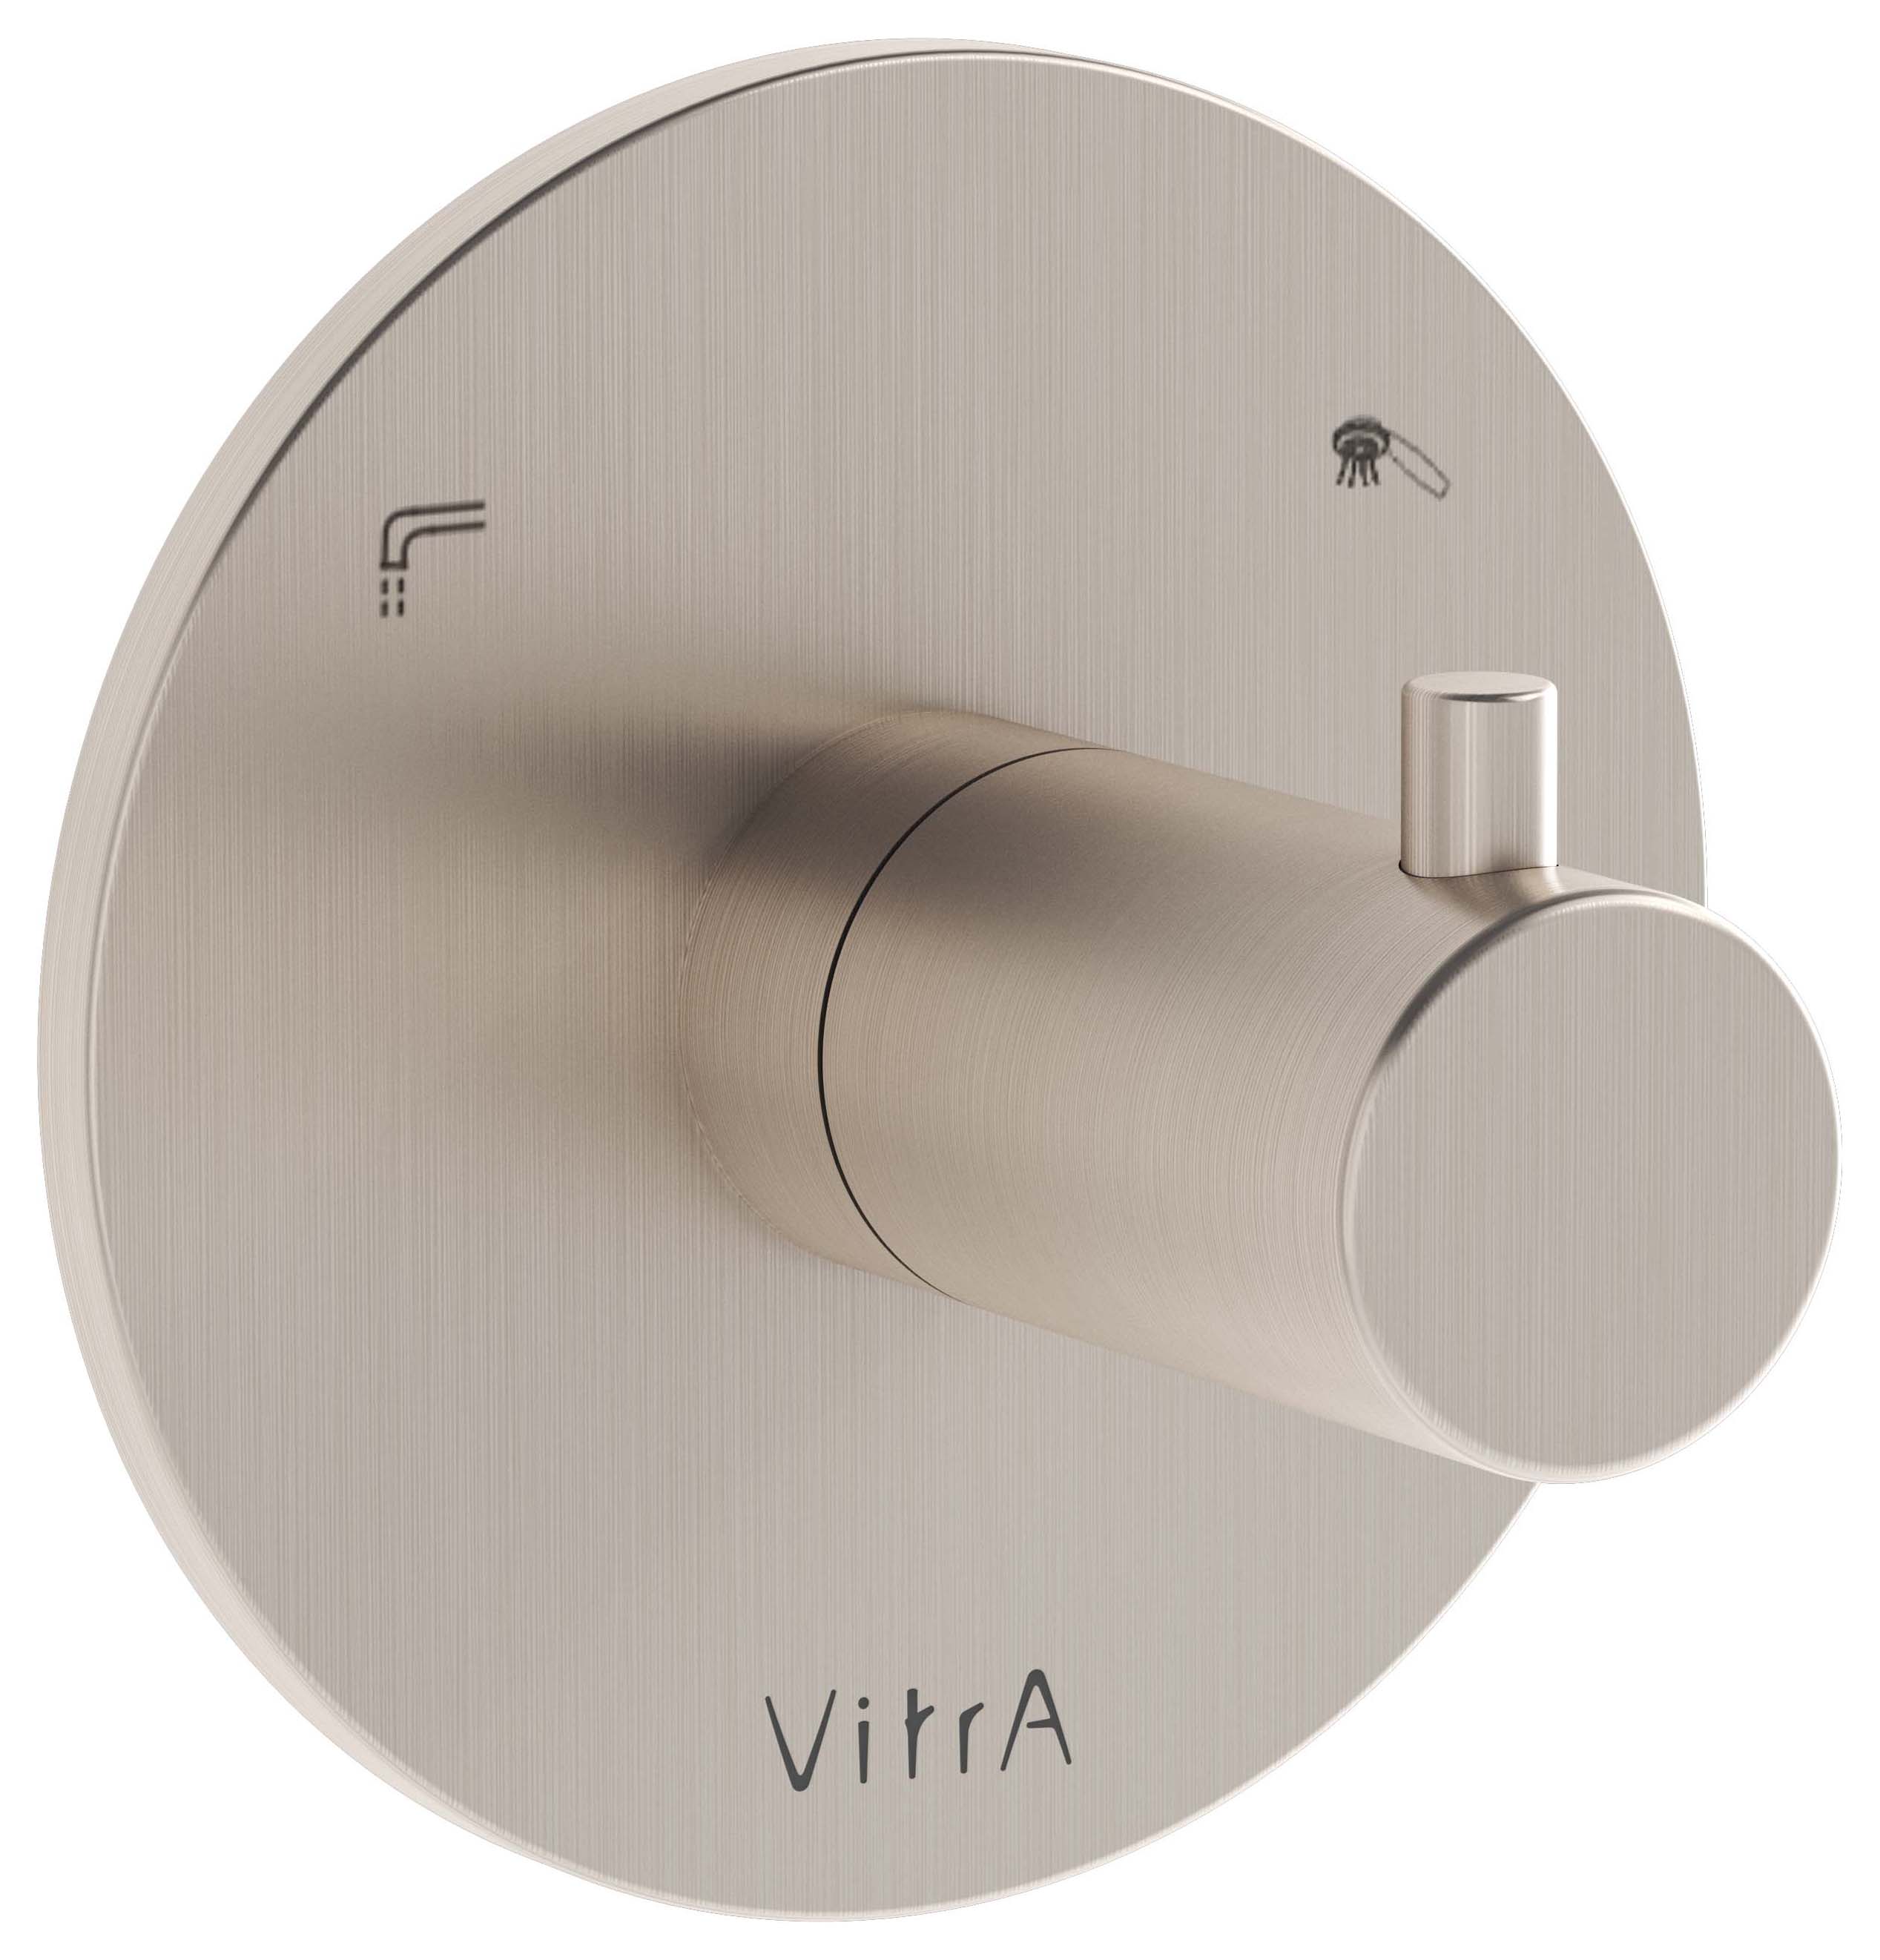 VitrA Origin Round Built-In 2 Way Concealed Shower Diverter Valve - Brushed Nickel